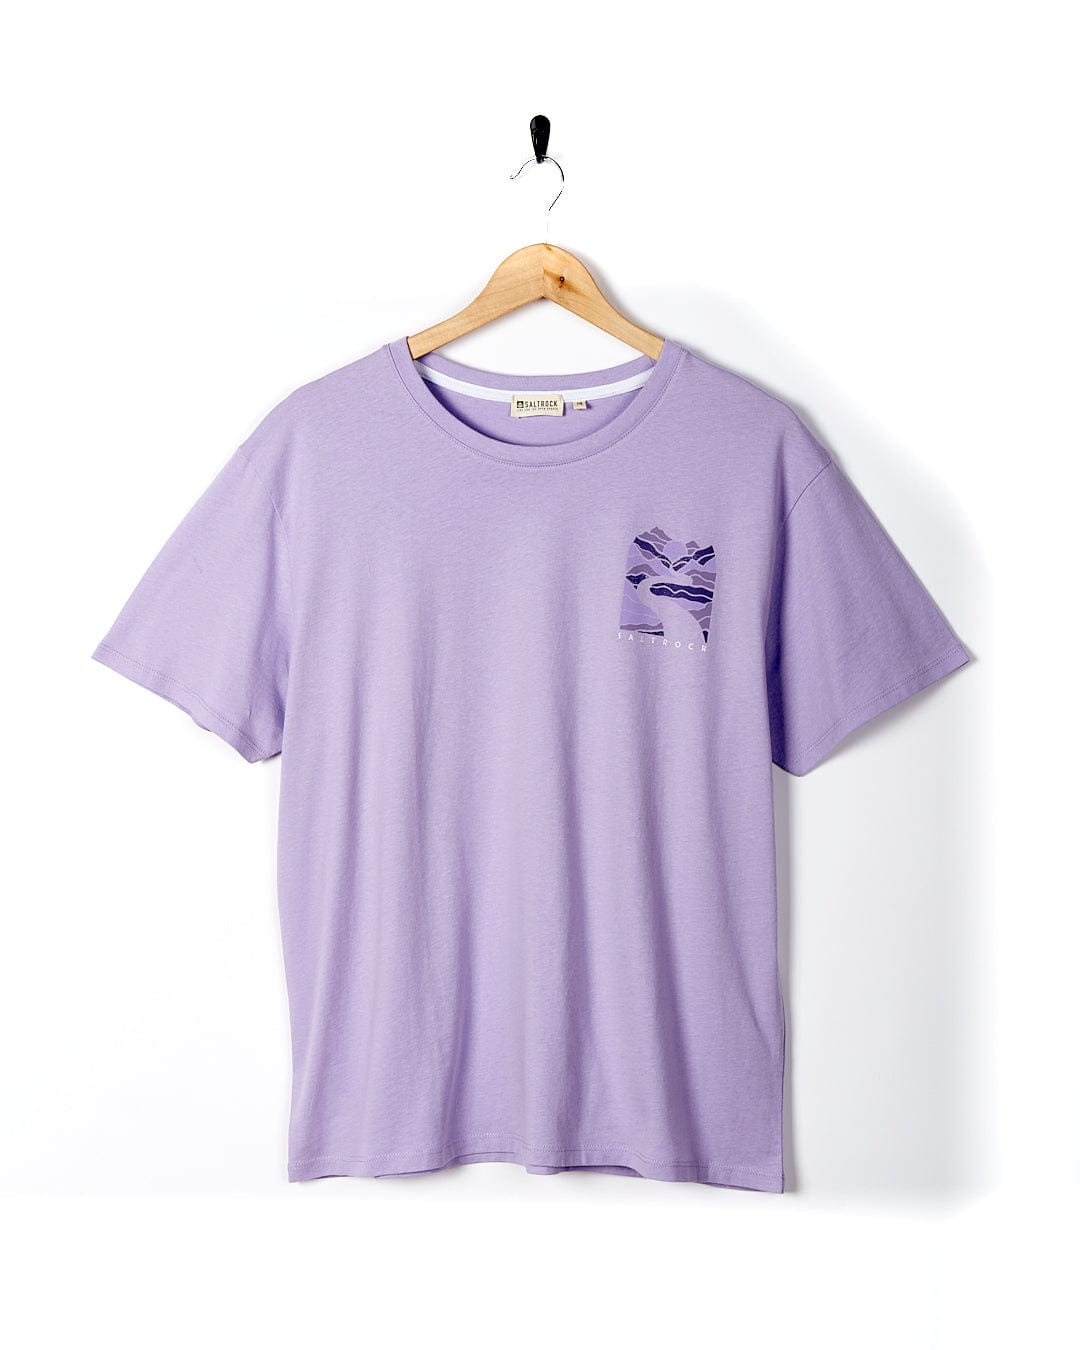 A Live Wild - Womens Short Sleeve T-Shirt - Light Purple hanging on a wooden hanger. (Saltrock)